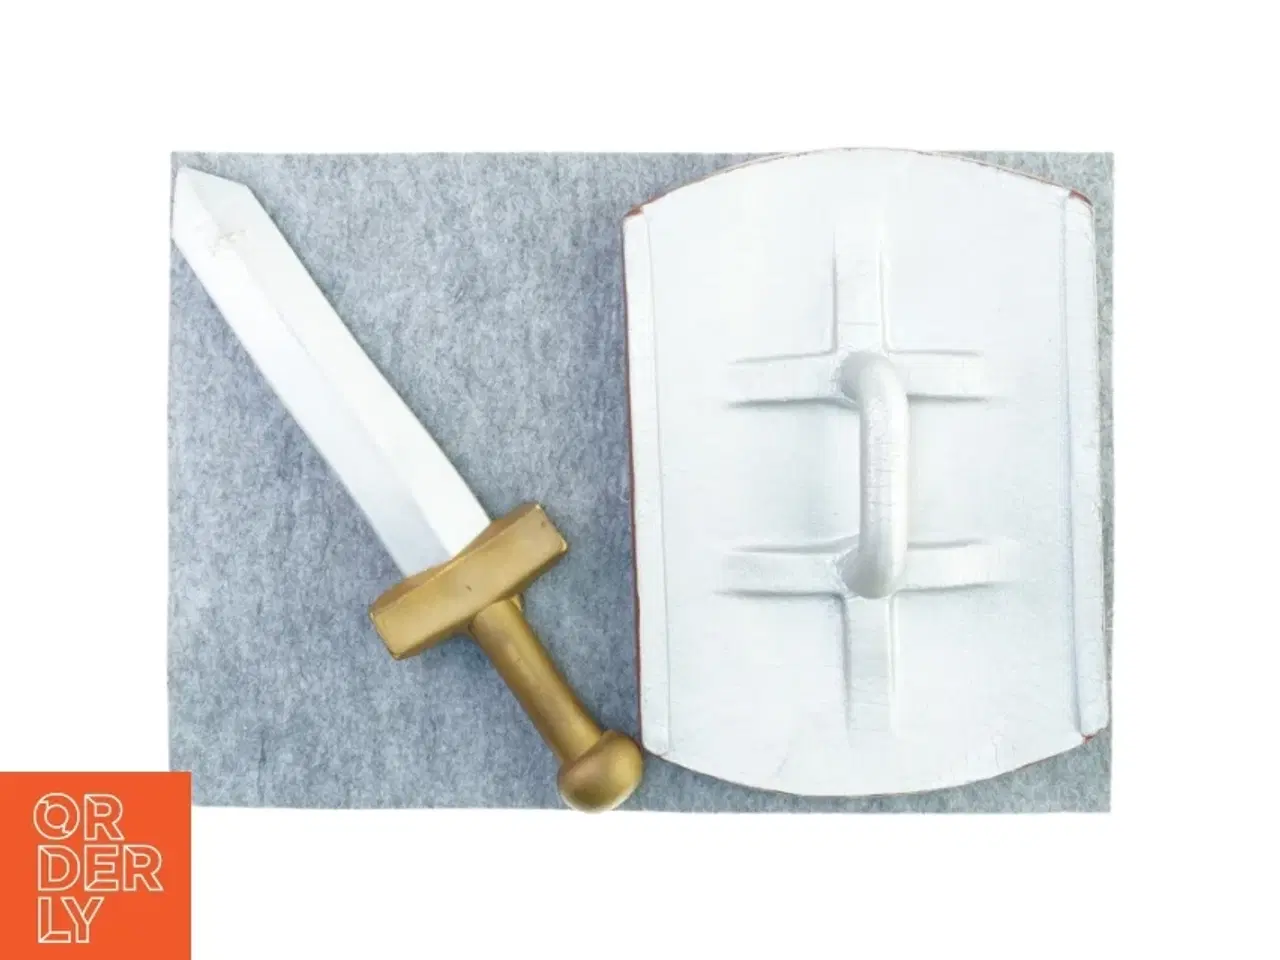 Billede 3 - Ridder skjold og sværd (str. Skjold 40 x 29 cm sværd 48 x 12 cm)